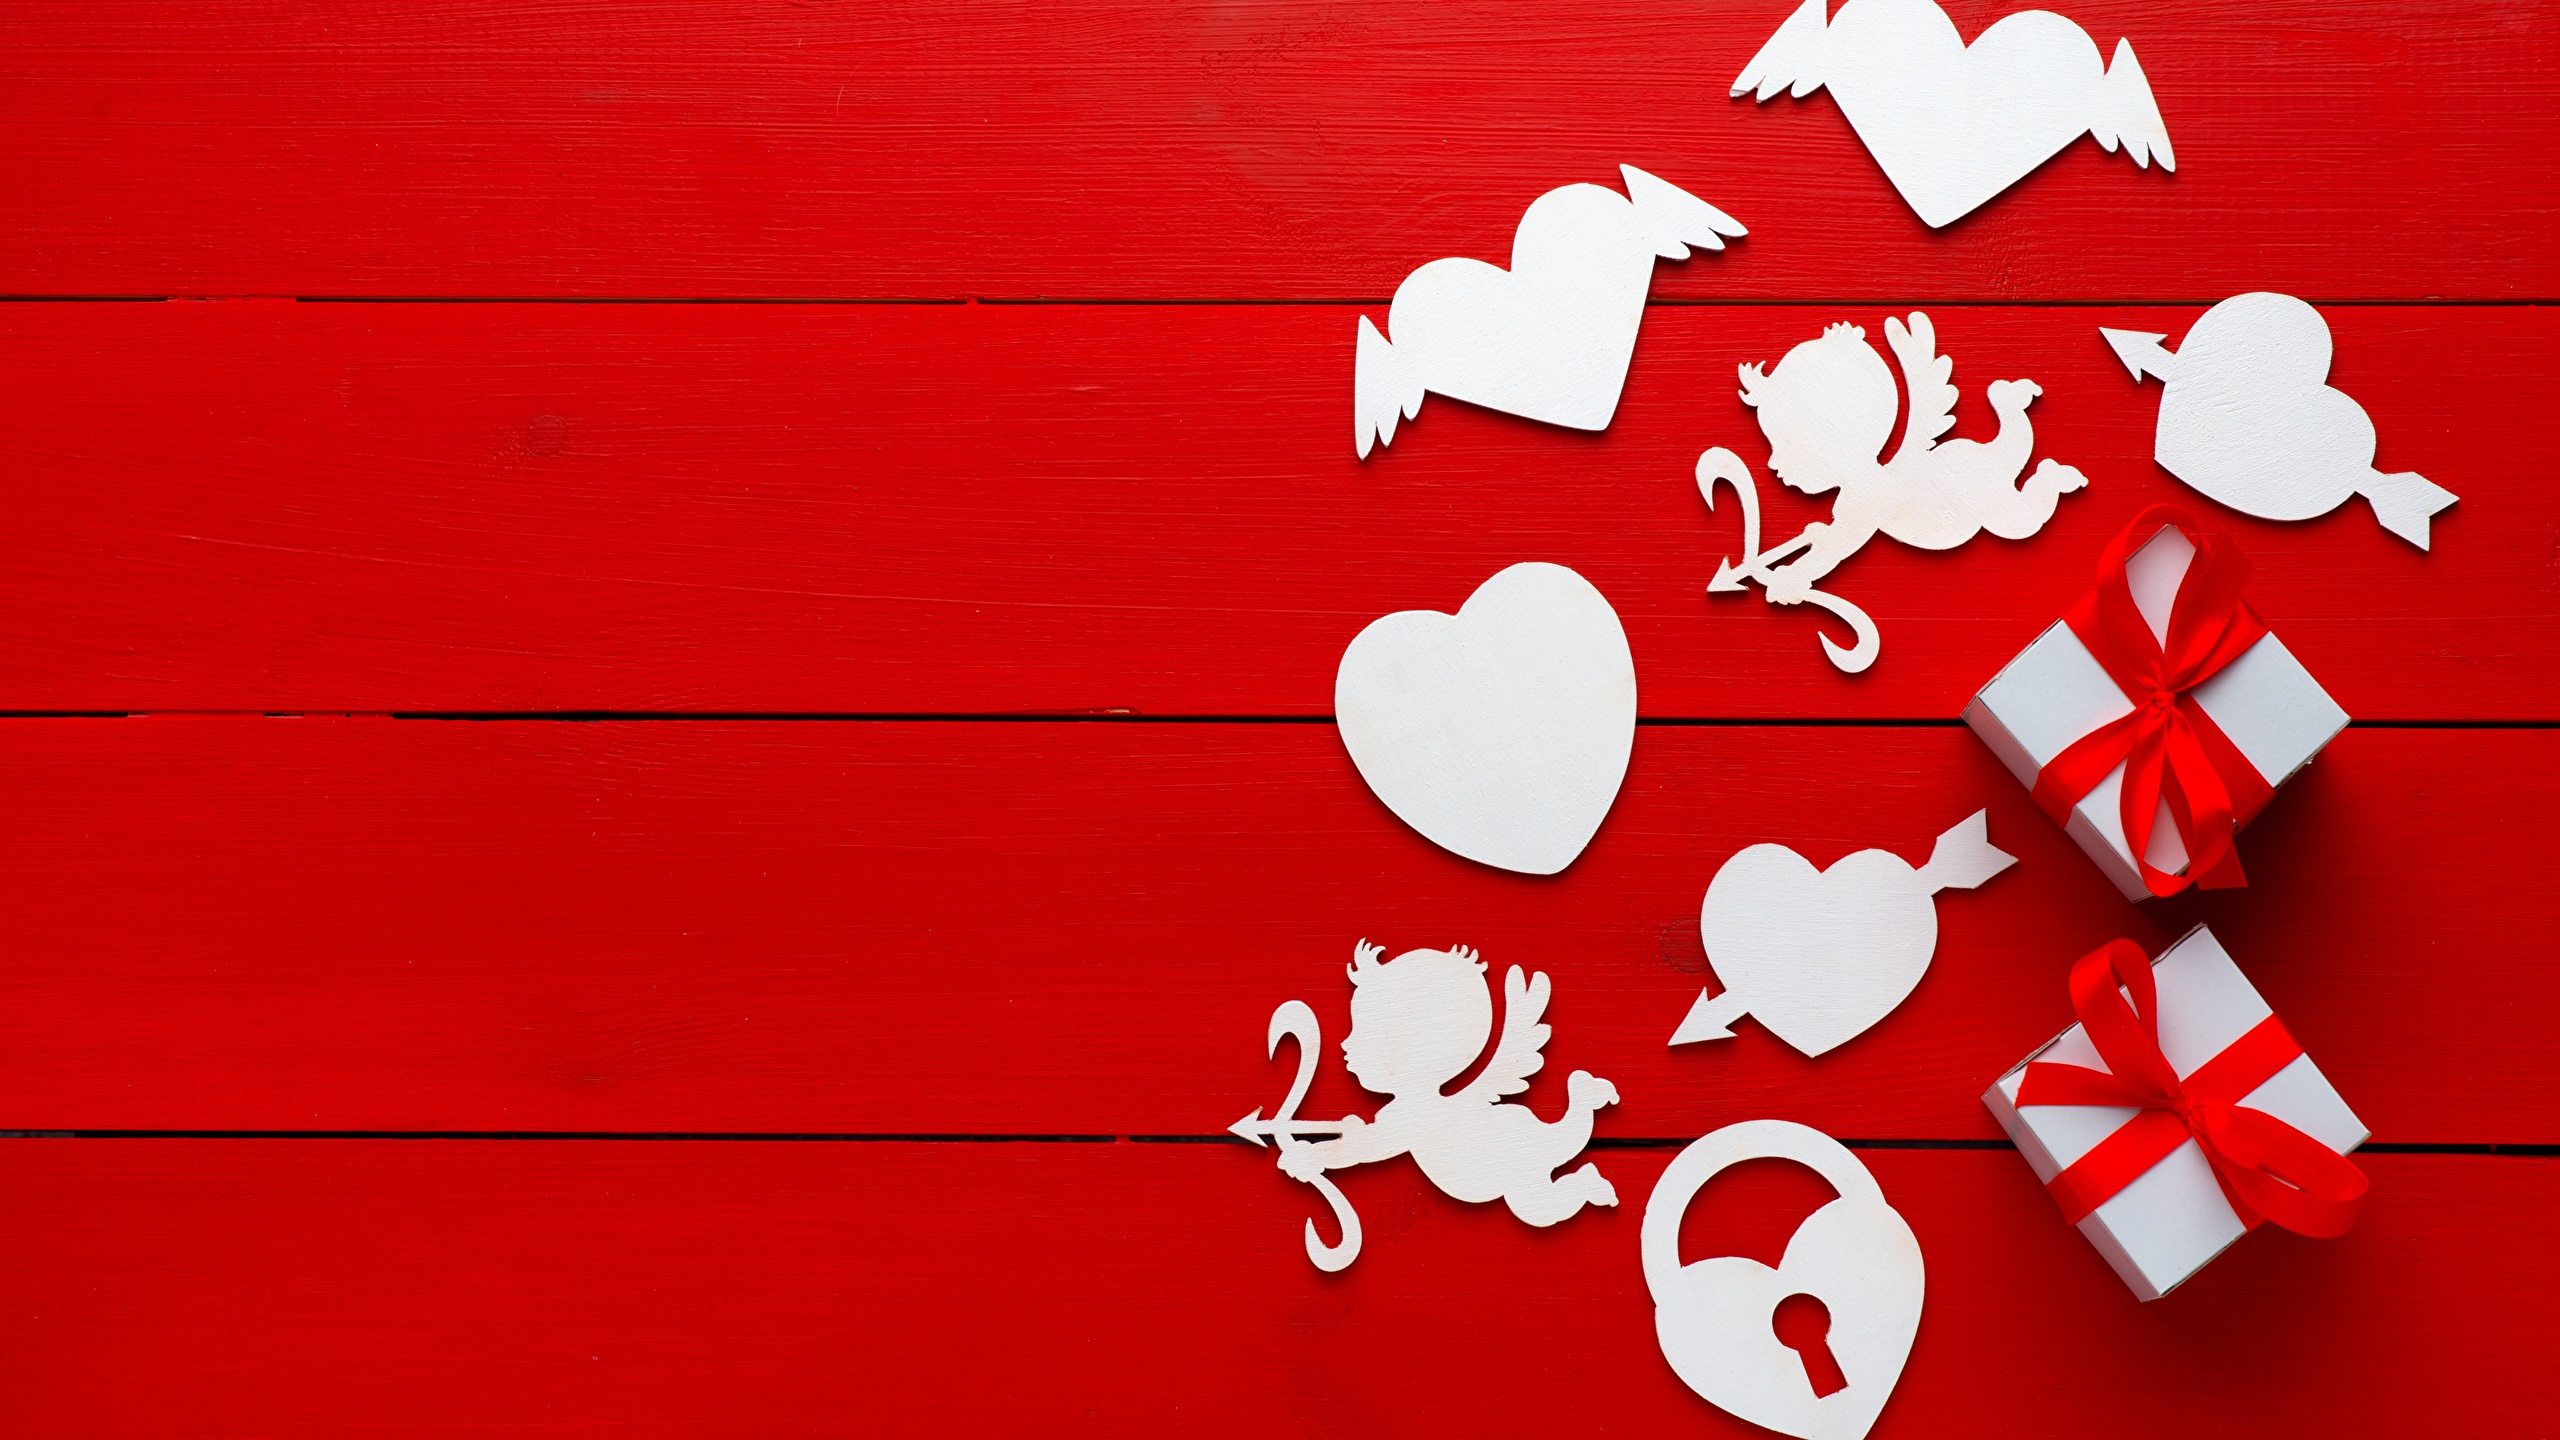 壁紙 2560x1440 バレンタインデー ハート 贈り物 赤の背景 ダウンロード 写真